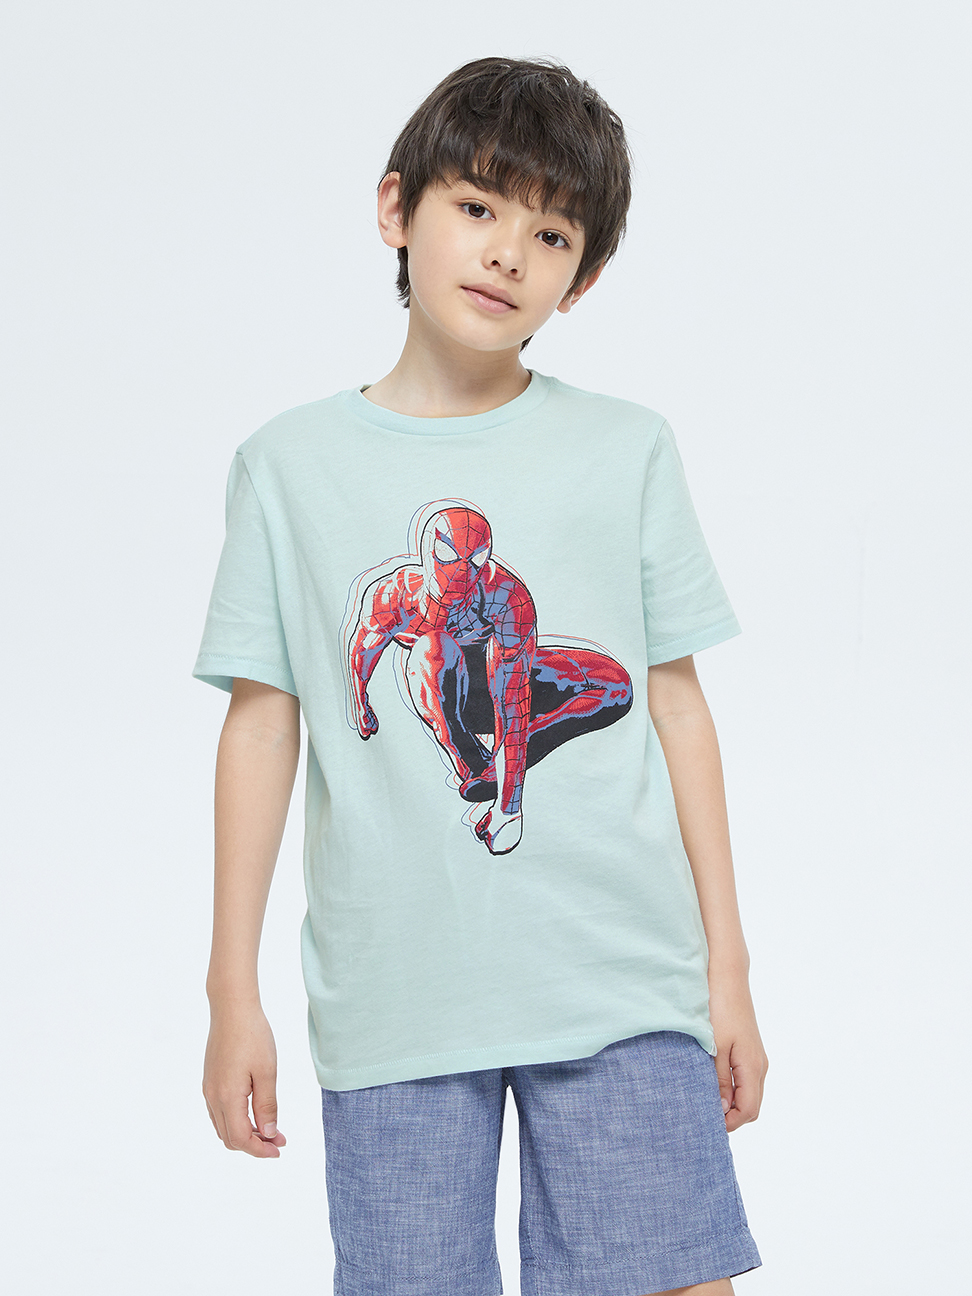 男童裝|Gap x Marvel漫威聯名 純棉短袖T恤-淺藍色